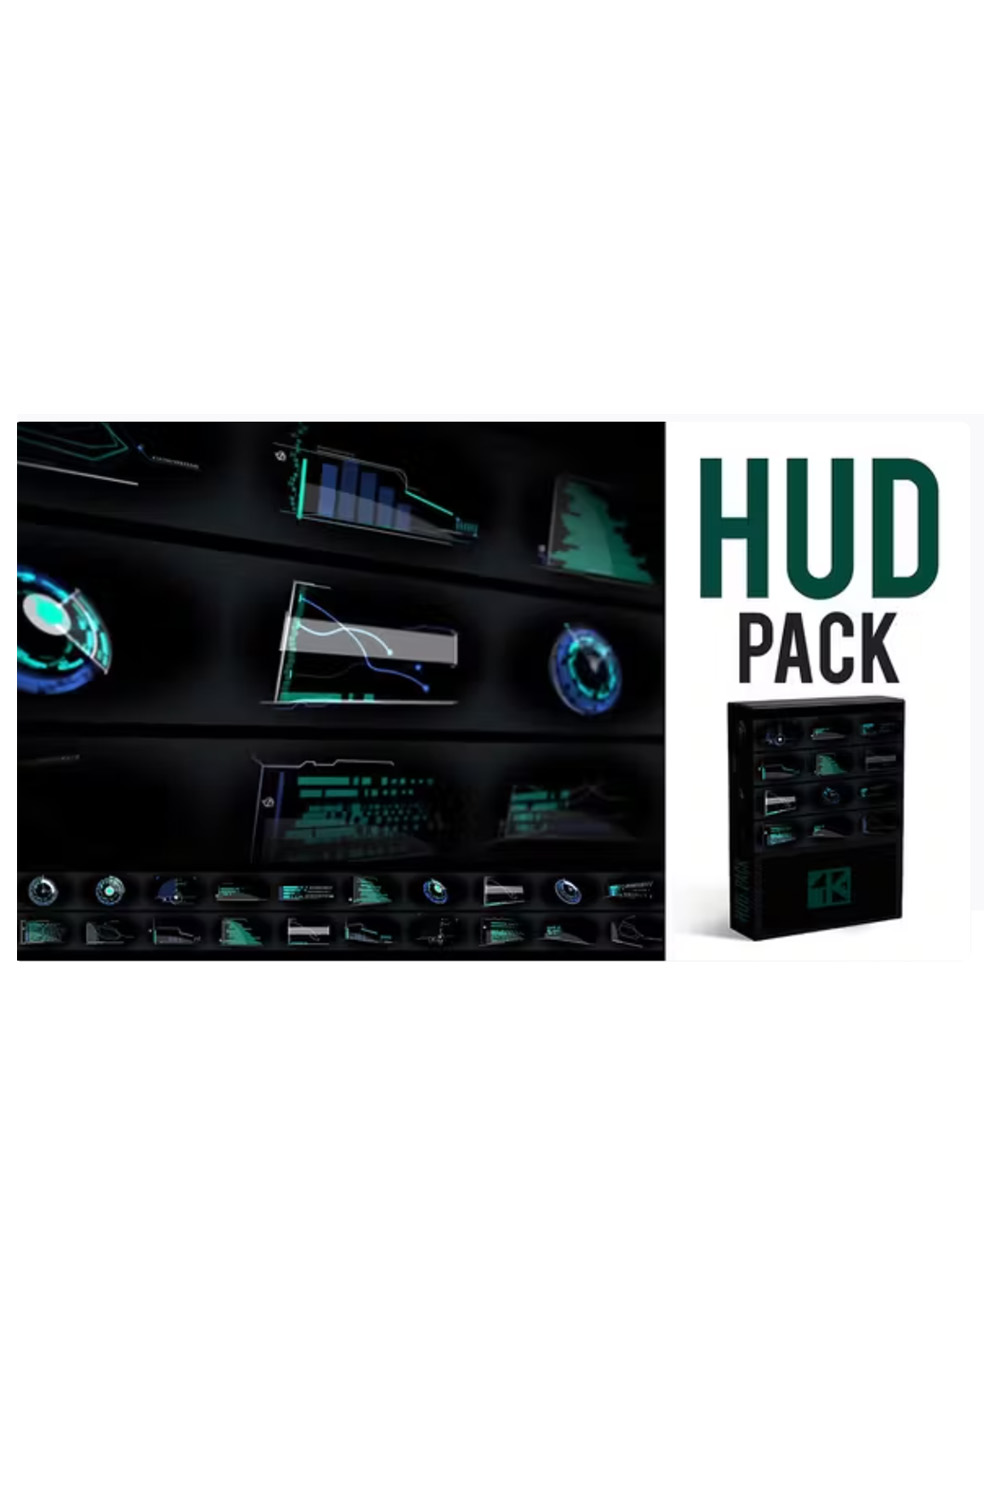 HUD Pack 4K pinterest preview image.